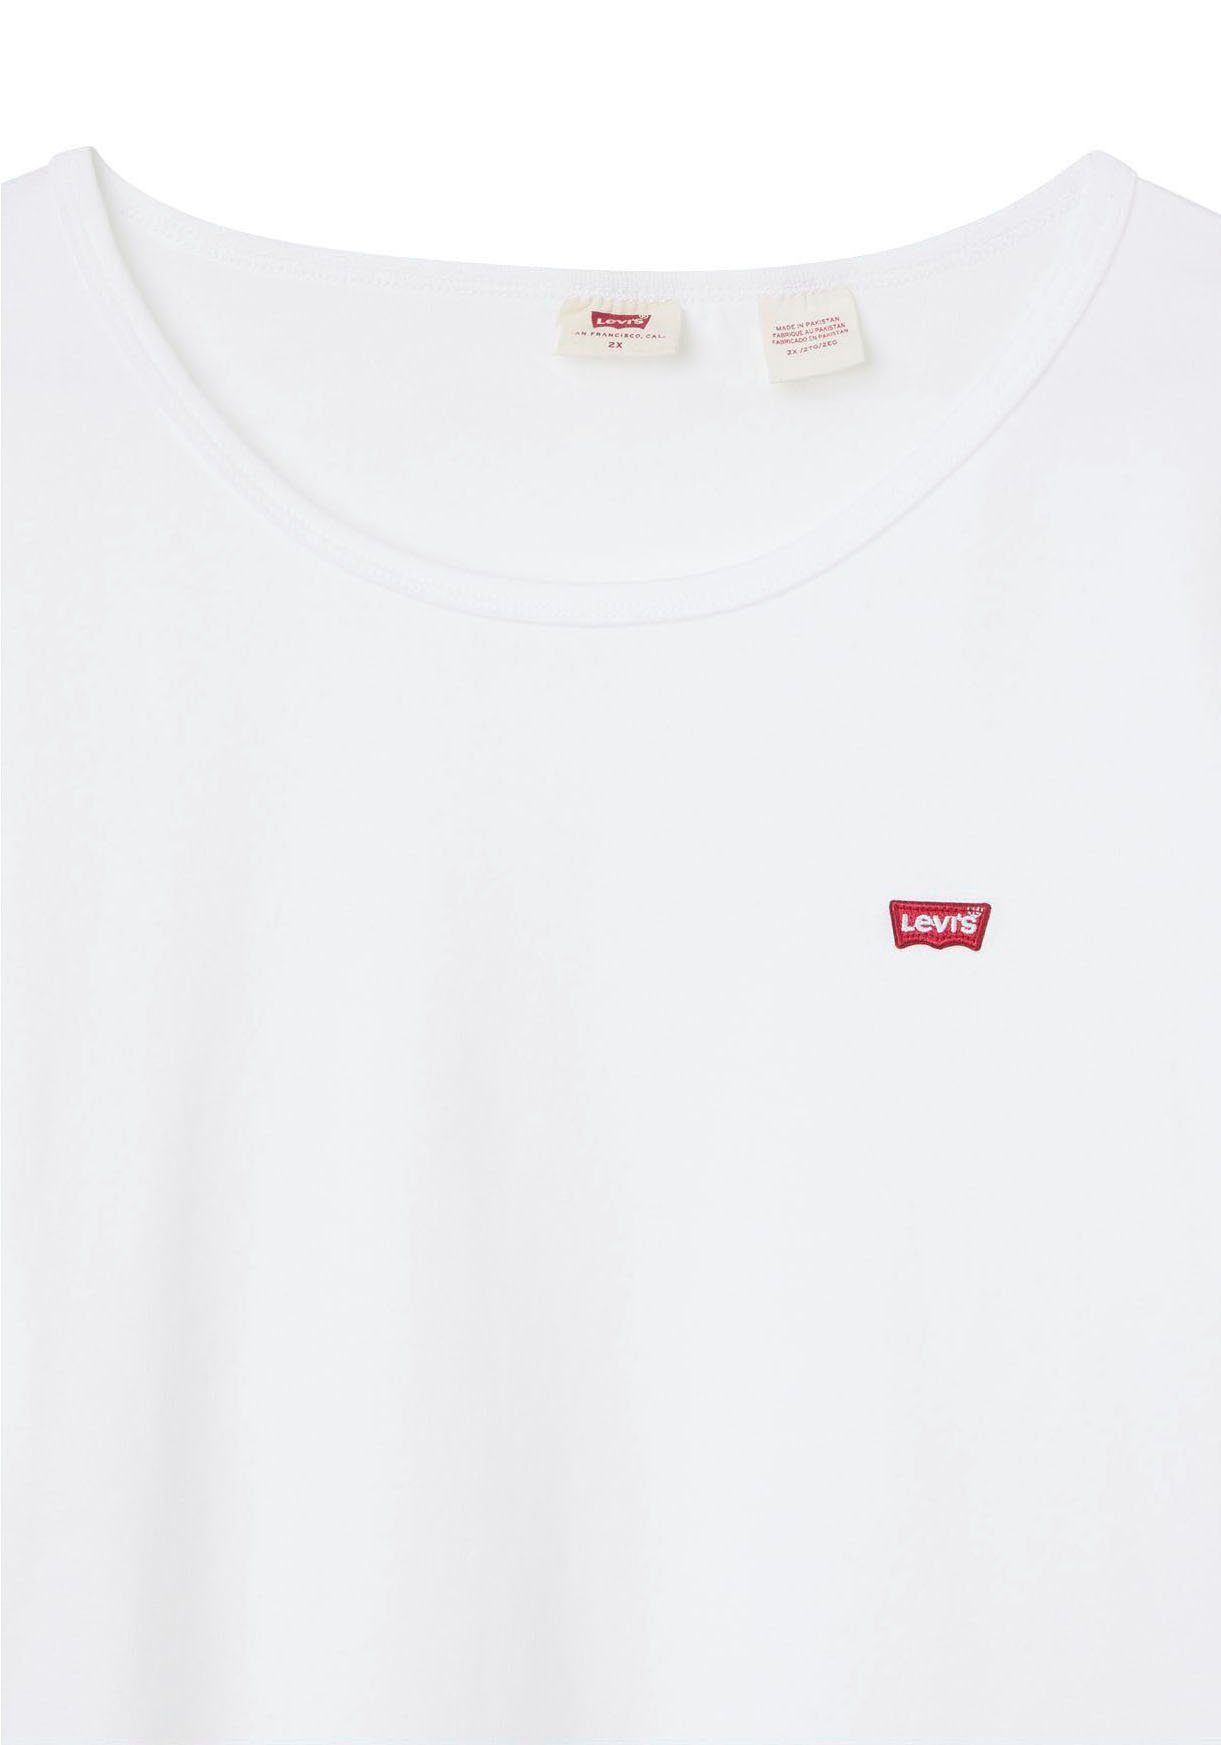 Levi's® Perfect Plus schwarz (2er-Pack) weiß-schwarz-gestreift, Crew T-Shirt